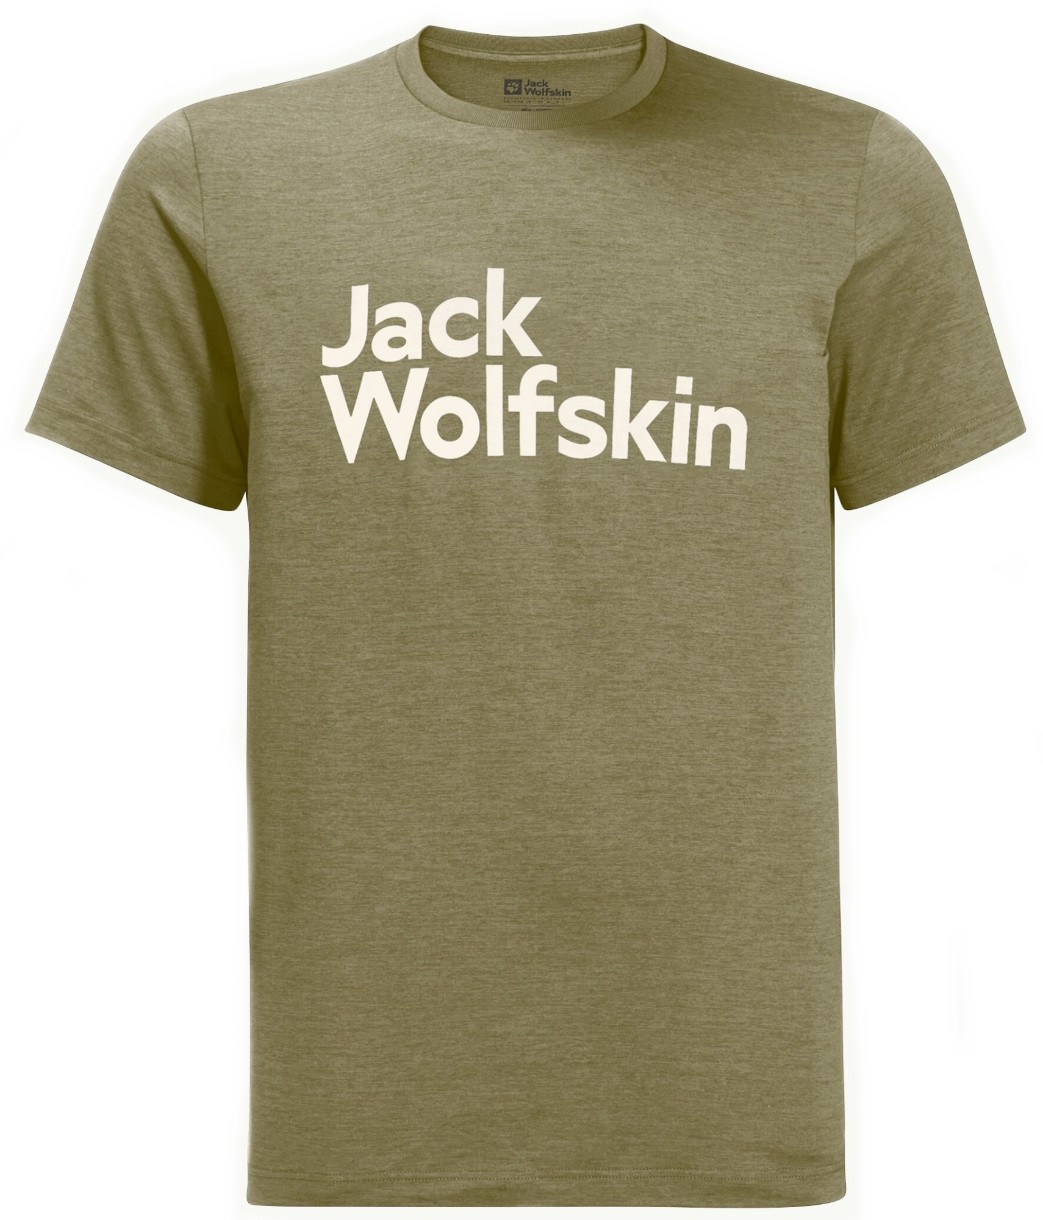 Мужская футболка Jack Wolfskin Brand T M Darkolivegreen L